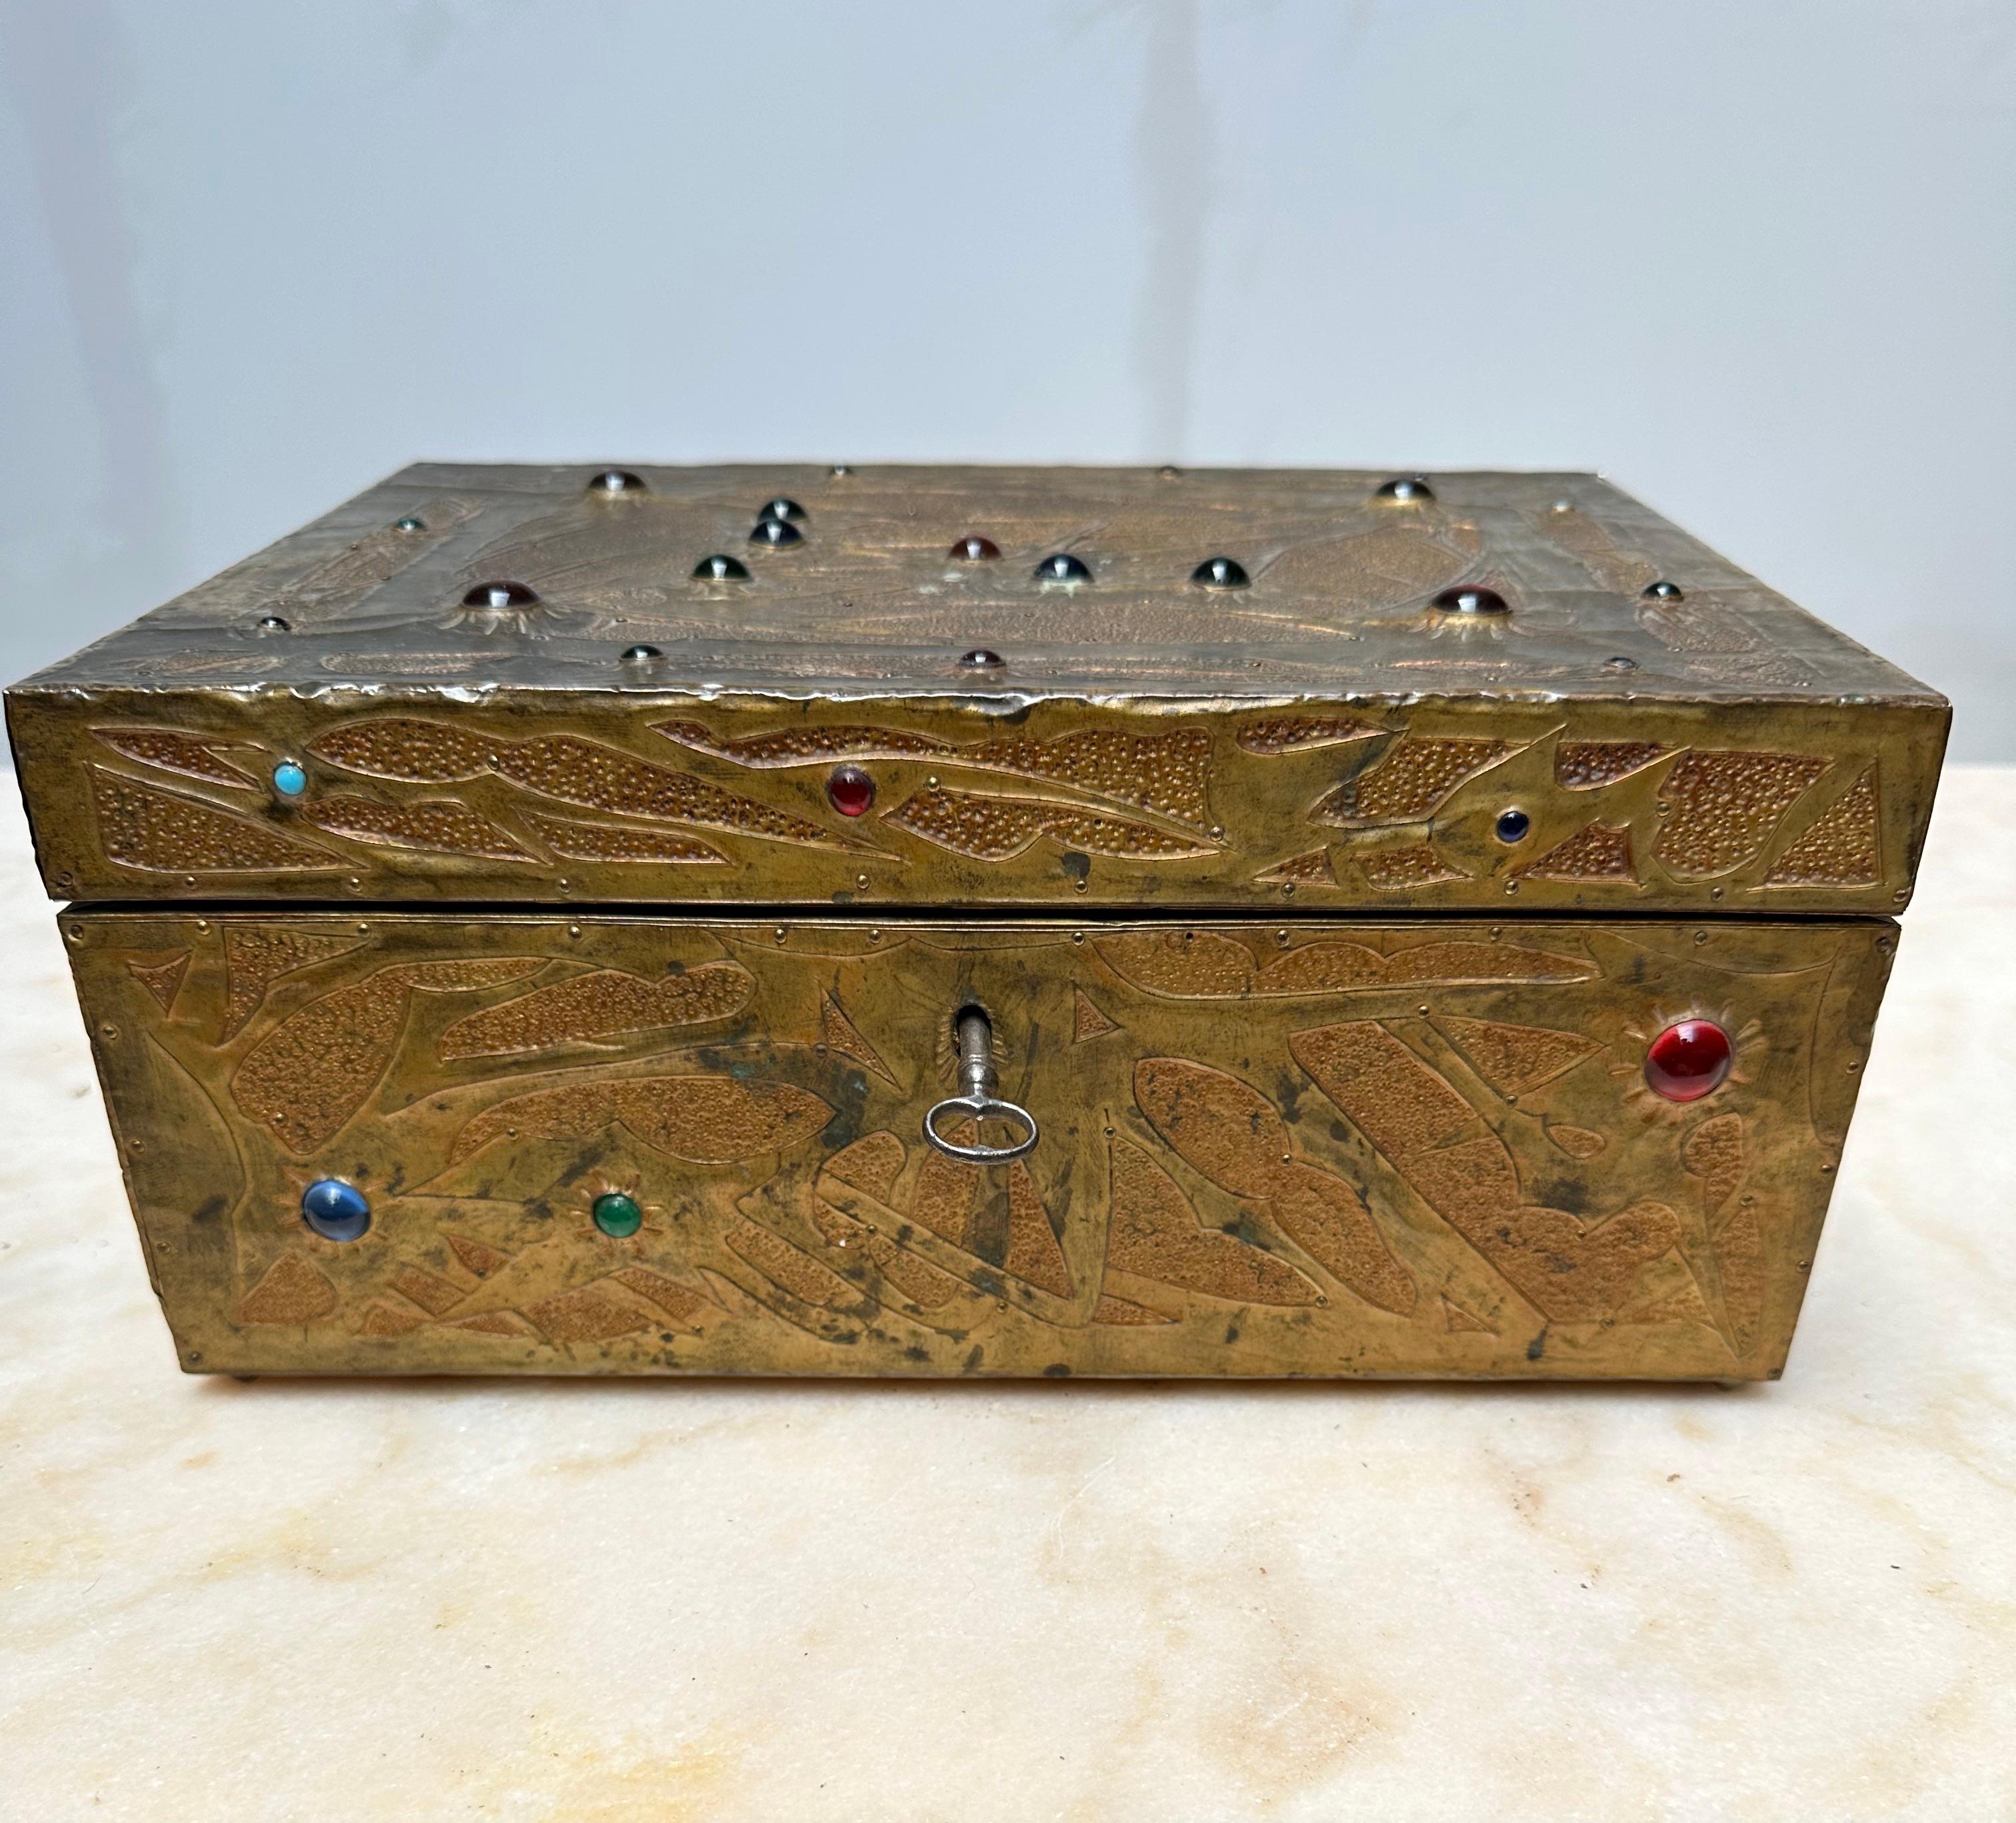 Boîte ancienne de bonne taille, unique et entièrement réalisée à la main, par Alfred Daguet (1875-1942).

Alfred Daguet était un artisan-métallier français, actif au début des années 1900 et spécialisé dans les panneaux de cuivre repoussé appliqués